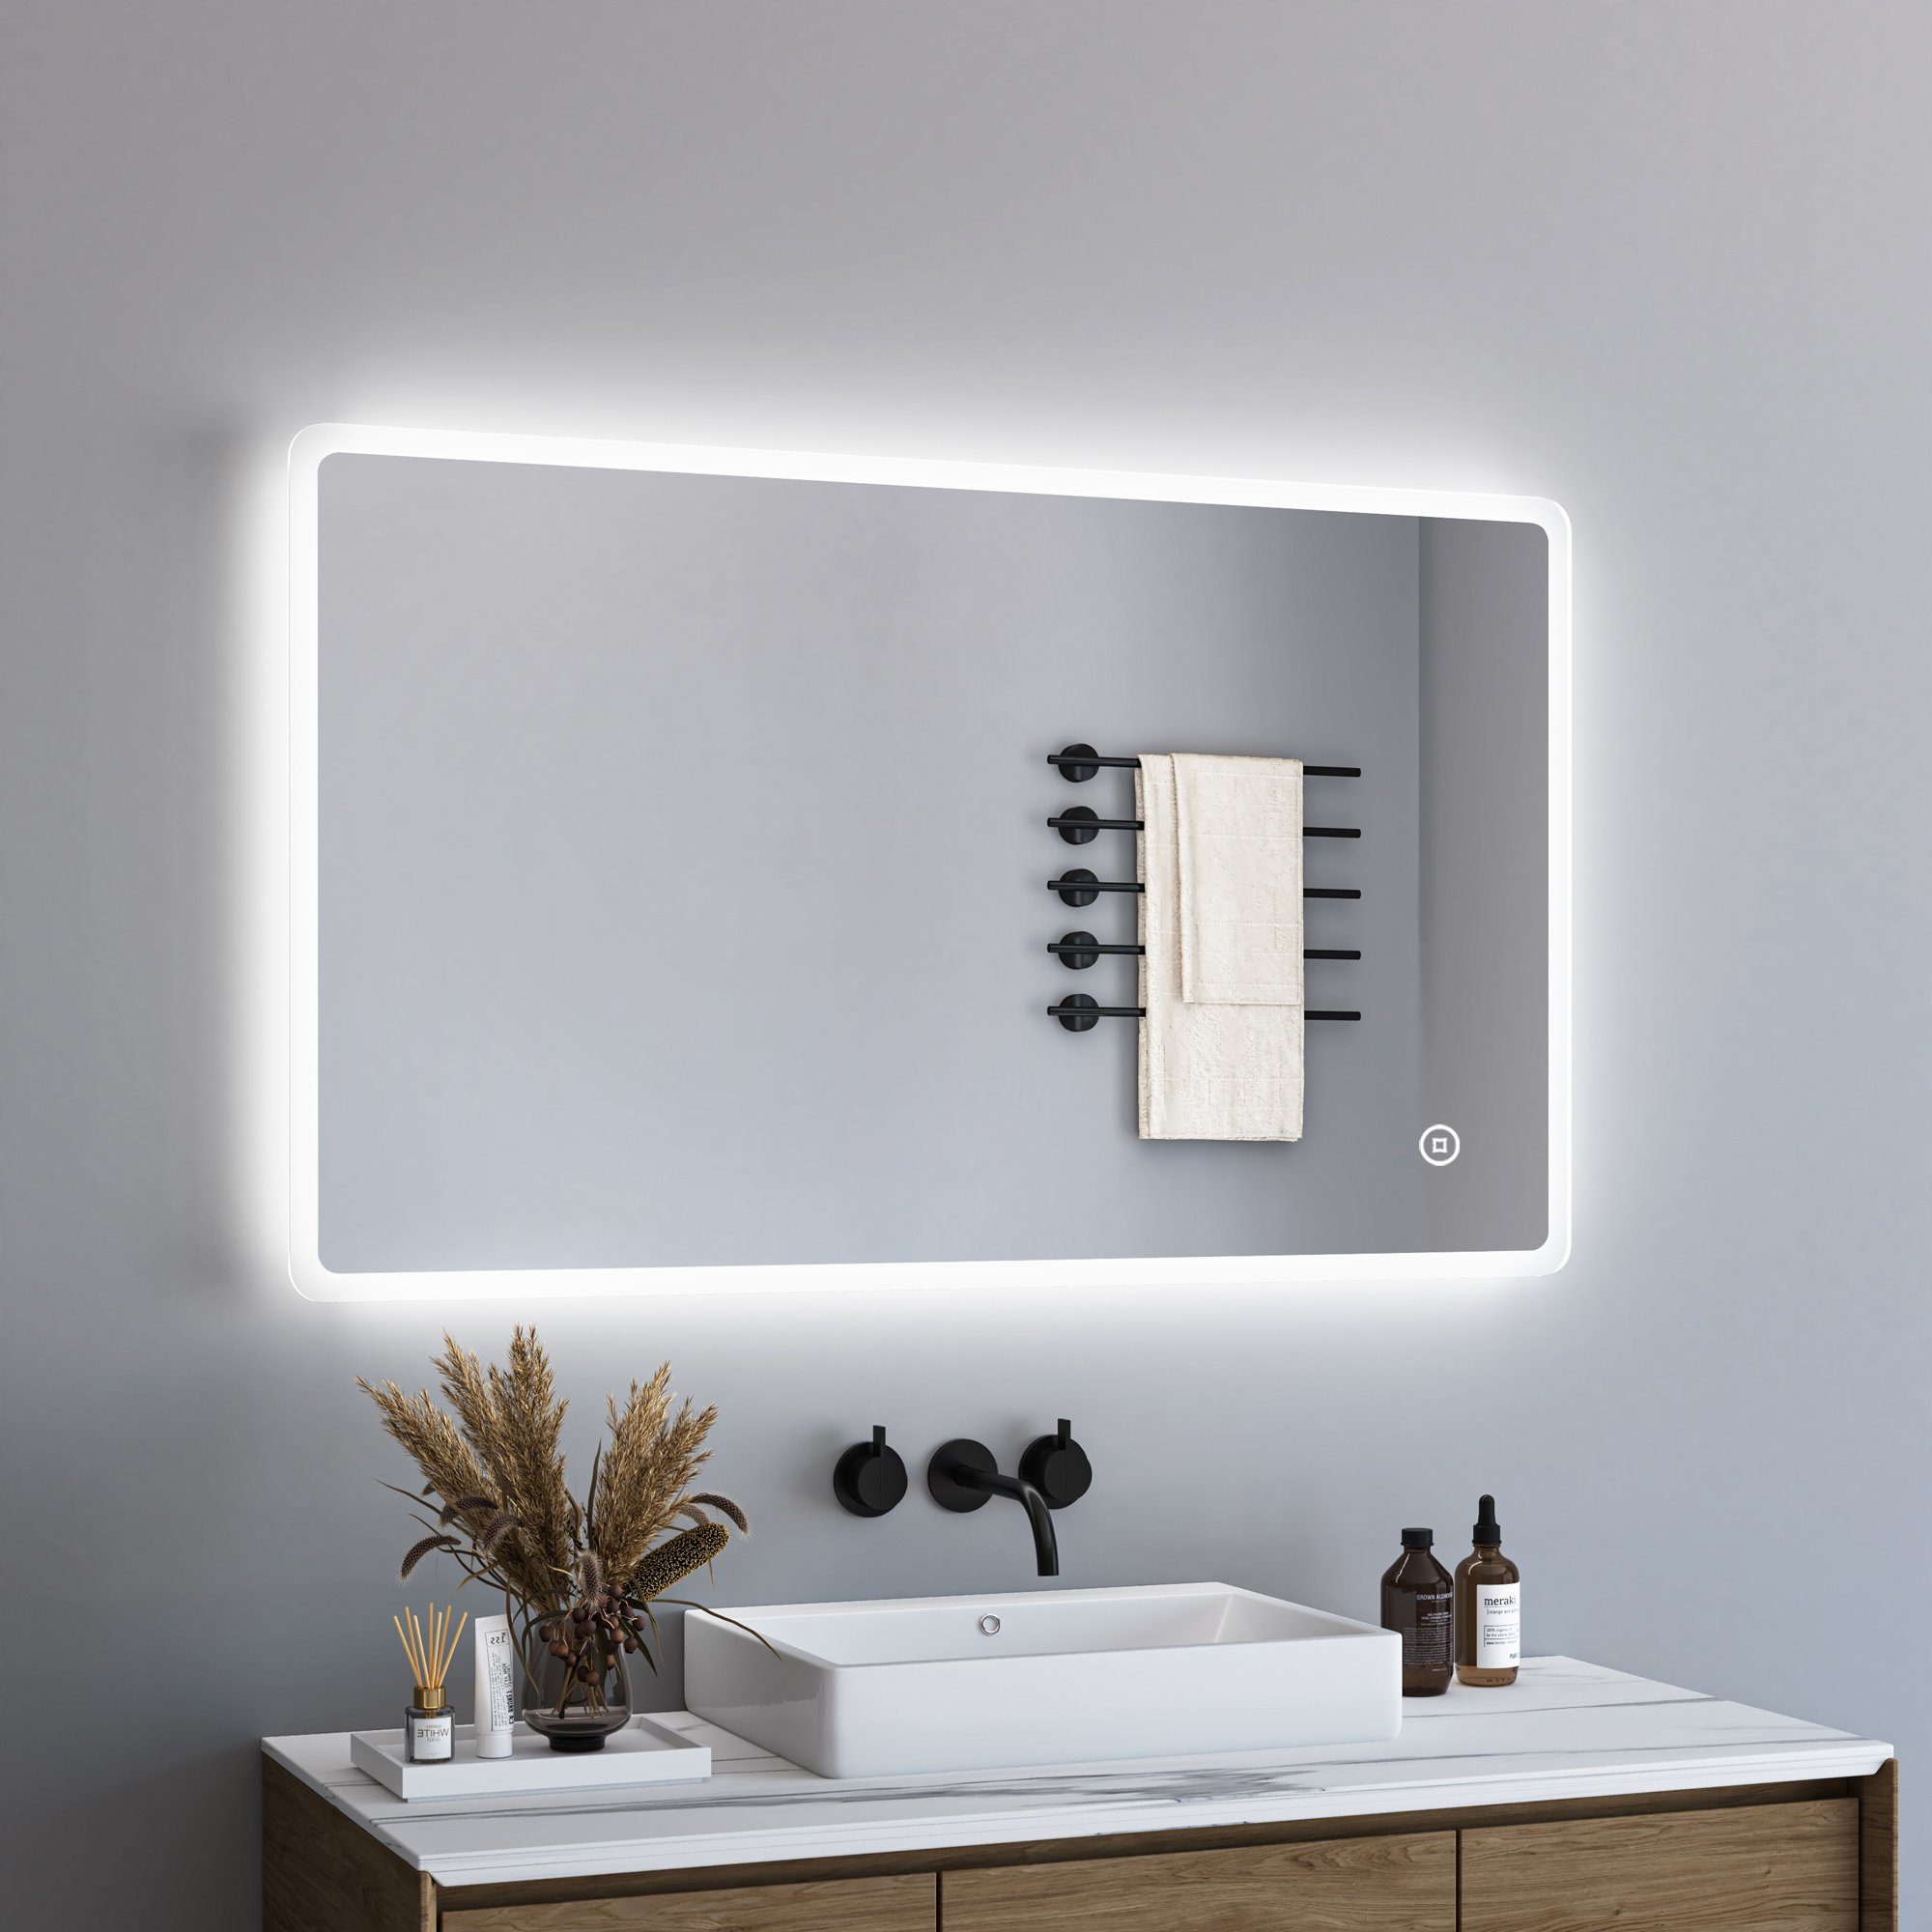 WDWRITTI Зеркало LED Badspiegel mit Touch 120x70 100x70 100x60 3Lichtfarben Dimmbar (Wandspiegel groß Lichtspiegel, Memory-Funktion, Touch,Wandschalter), energiesparender, IP44